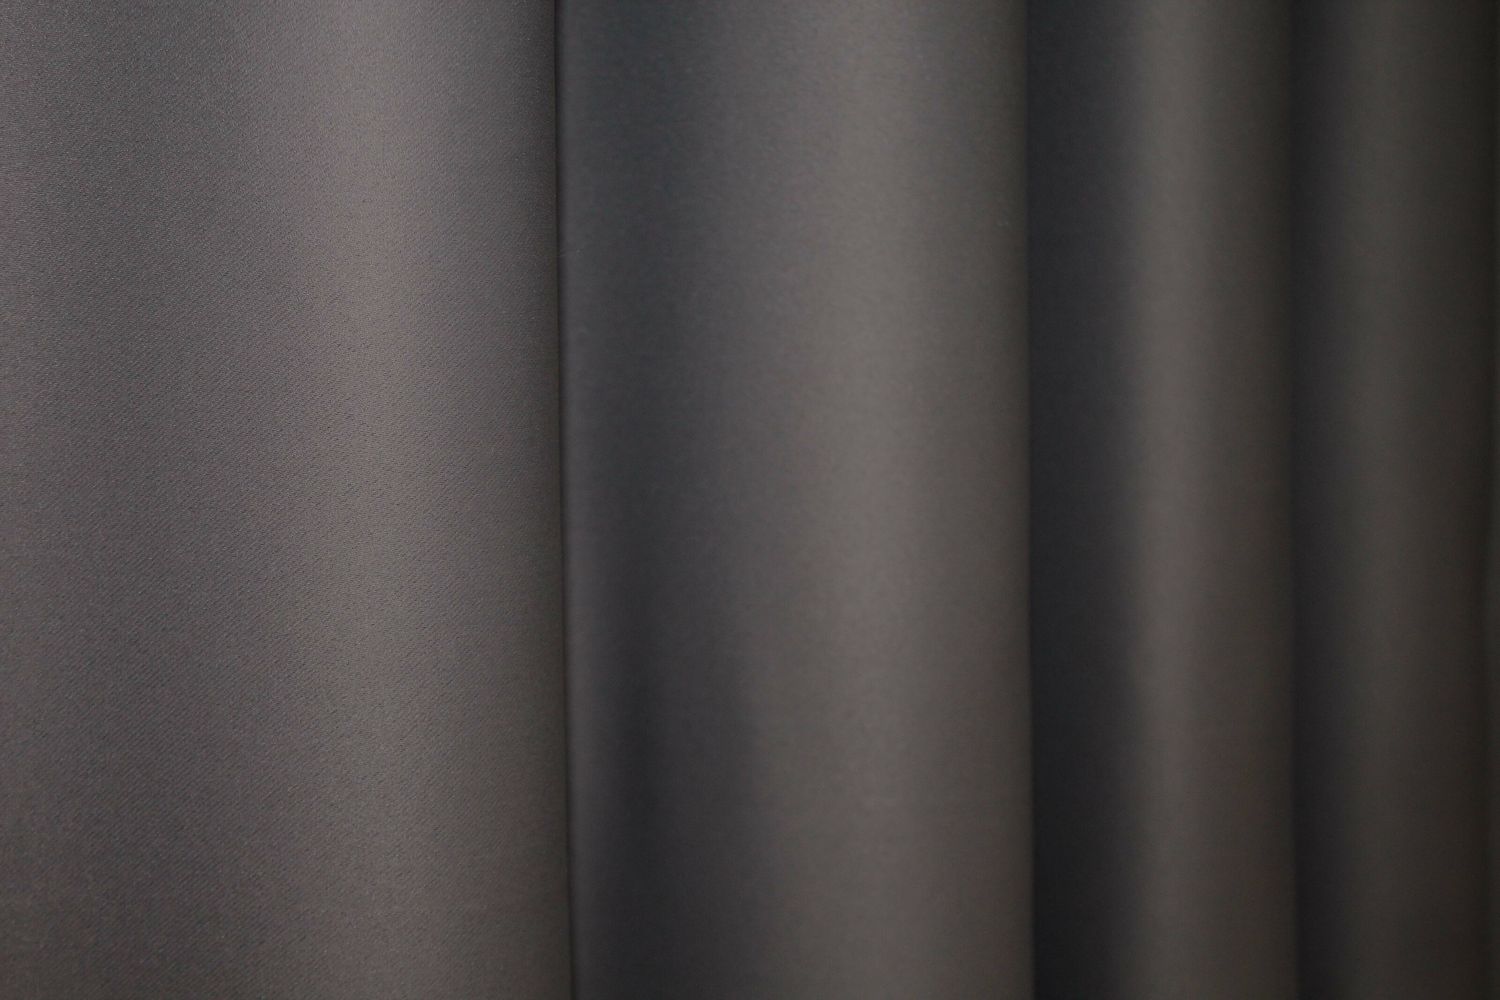 Комплект штор из ткани блэкаут "Fusion Dimout" цвет темное какао 833ш, Темное какао, Комплект штор (2шт. 1,5х2,7м.), Классические, Без ламбрекена, 1,5 м., 2,7 м., 150, 270, 2 - 3 м., В комплекте 2 шт., Тесьма